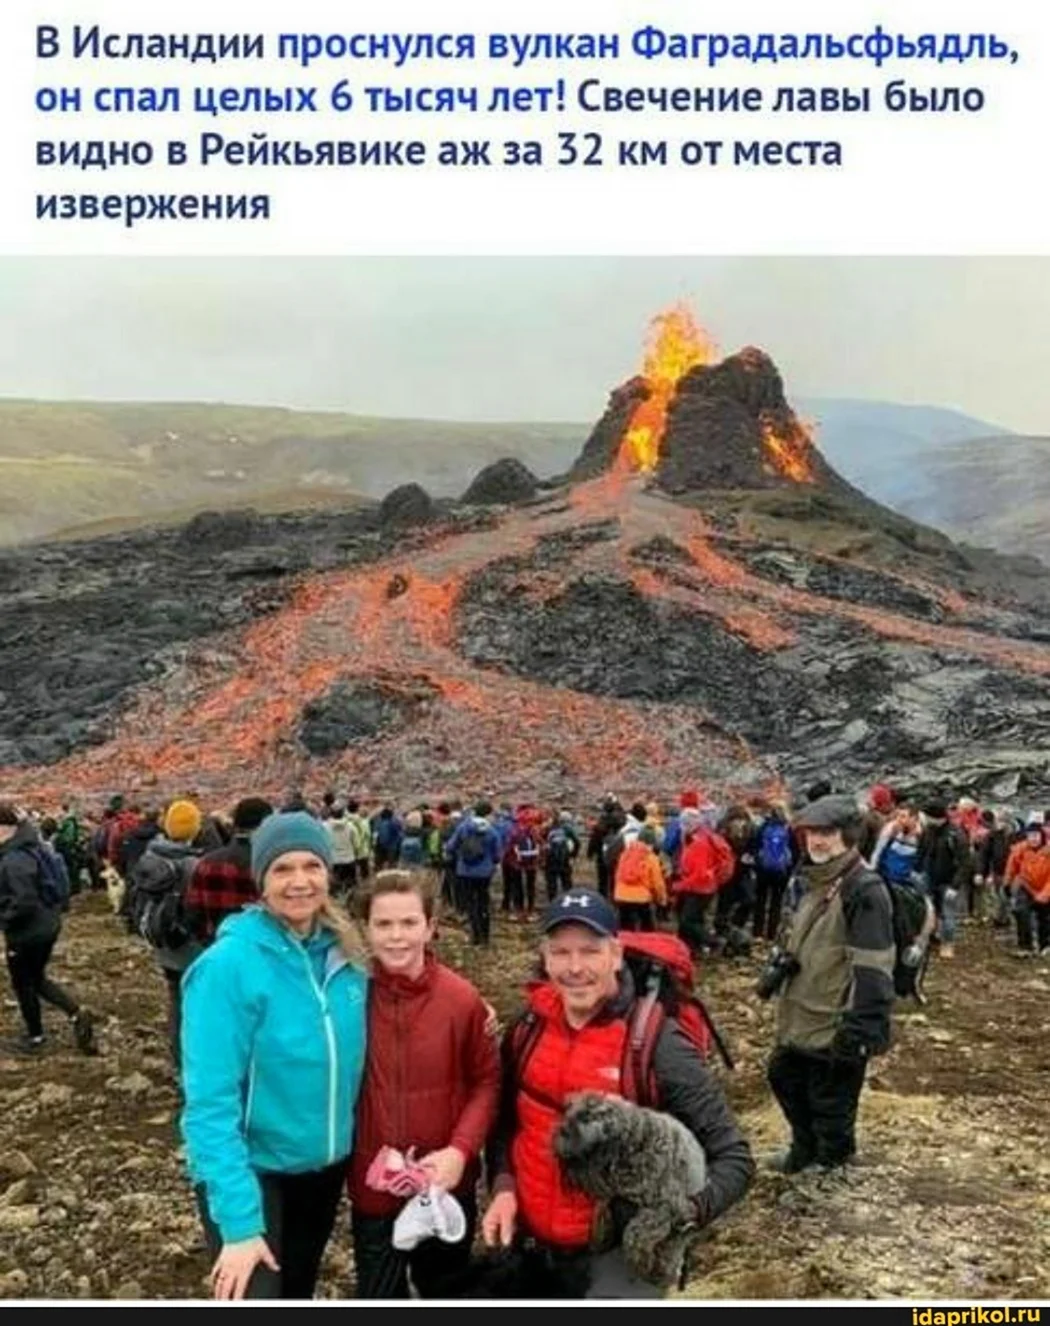 Вулкан в Исландии фаградальсфьядль. Открытка, картинка с поздравлением, с праздником